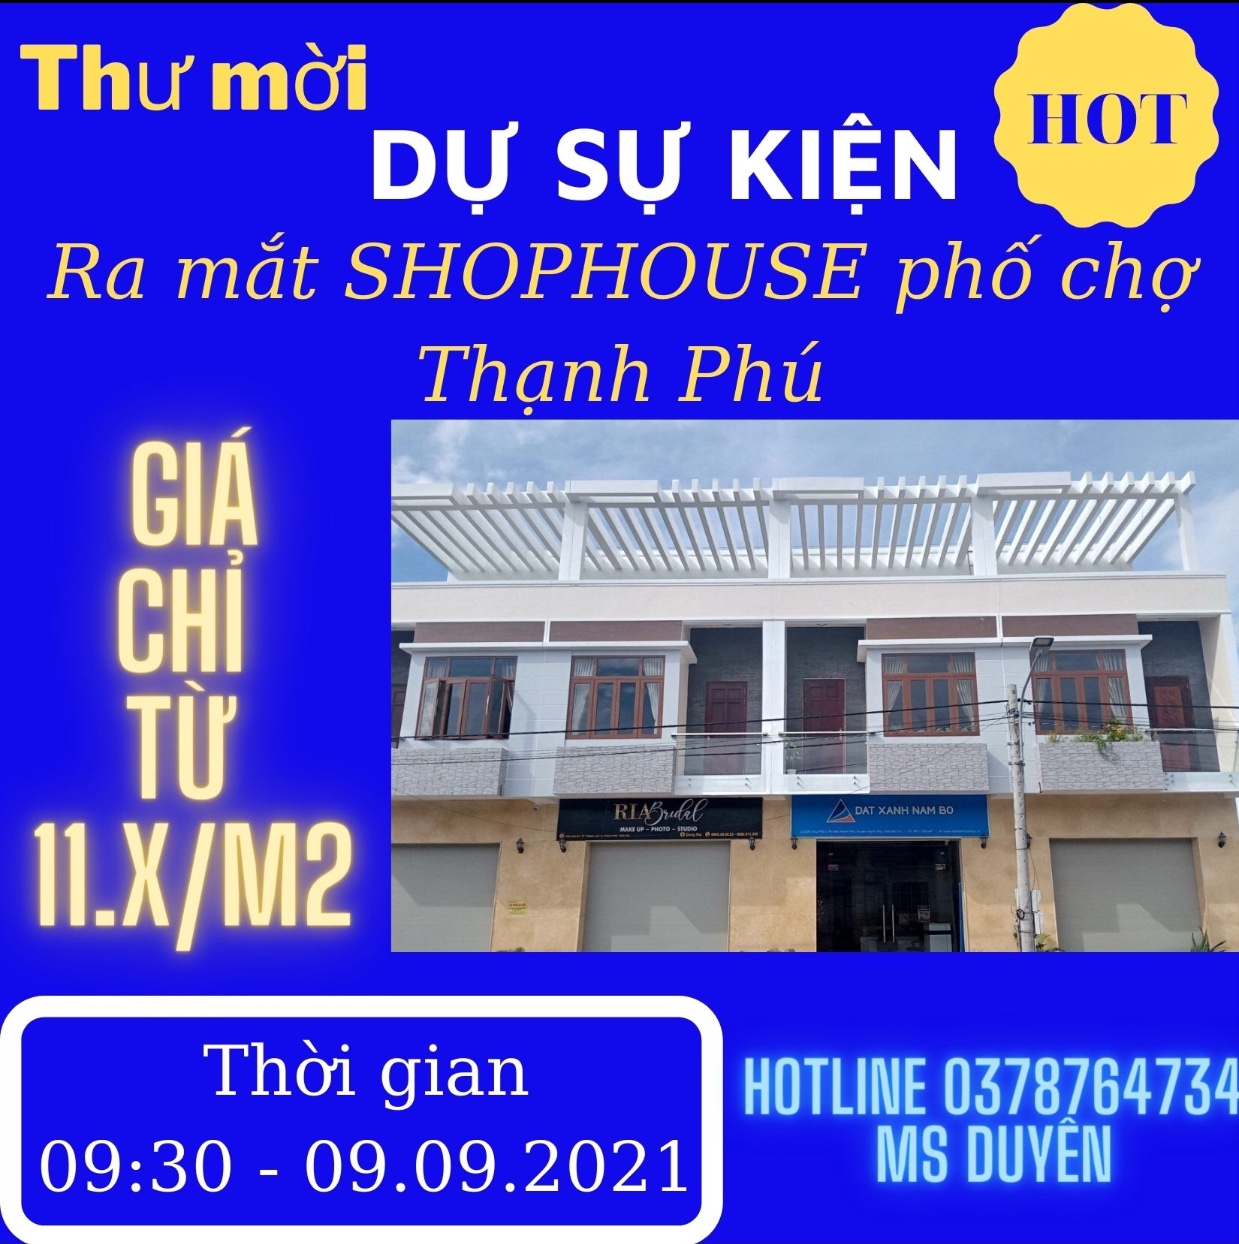 Mở bán shophouse phố chợ đầu tiên tại huyện Thạnh Phú siêu hot